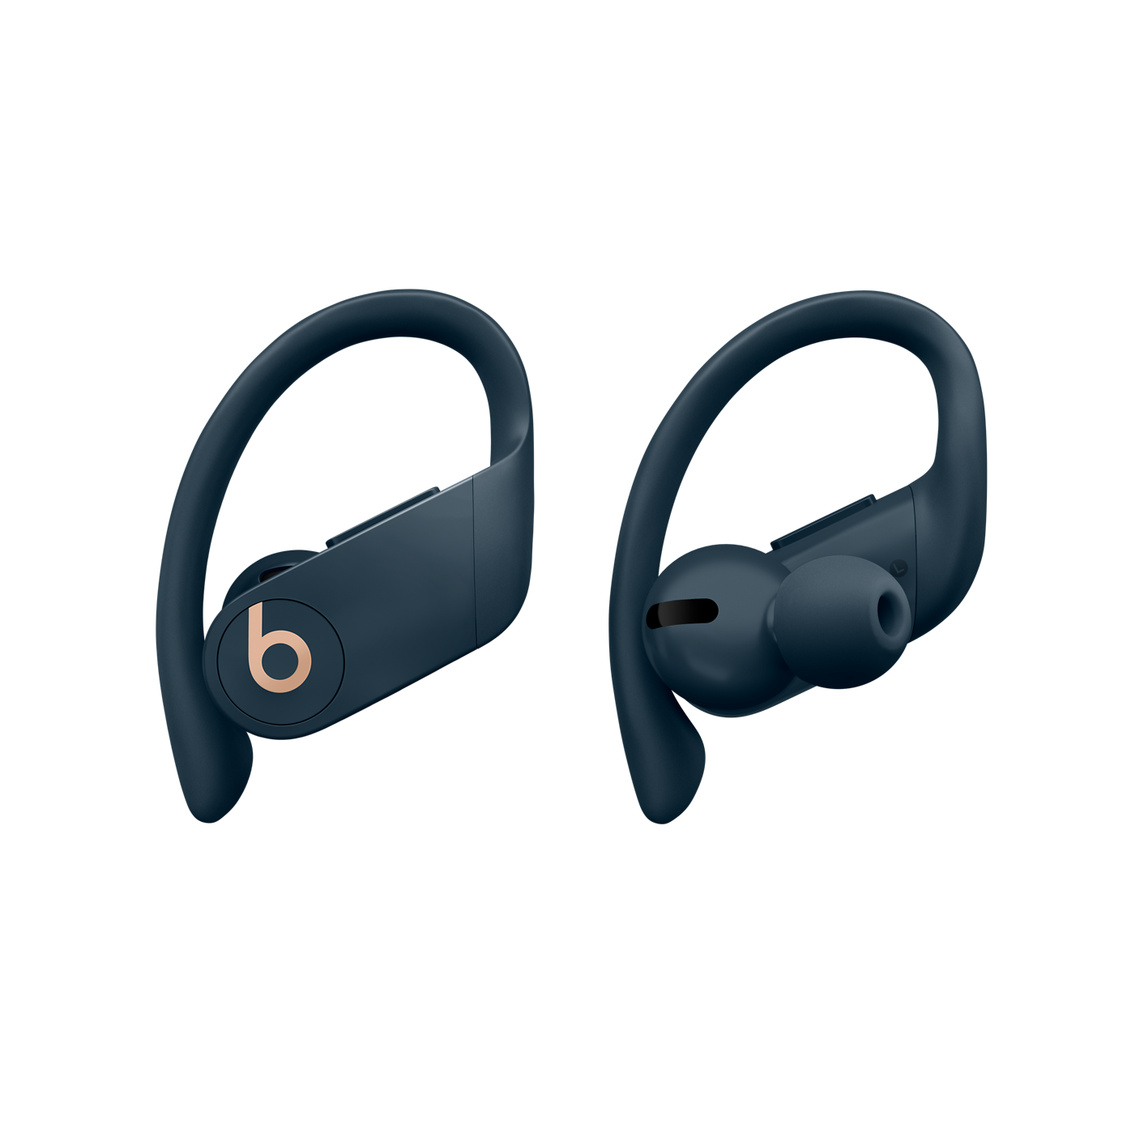 Powerbeats Pro komplett kabellose In-Ear Kopfhörer in Marineblau mit anpassbaren Ohrbügeln für sicheren Halt, die sich mit mehreren Ohreinsätzen für noch mehr Tragekomfort anpassen lassen.